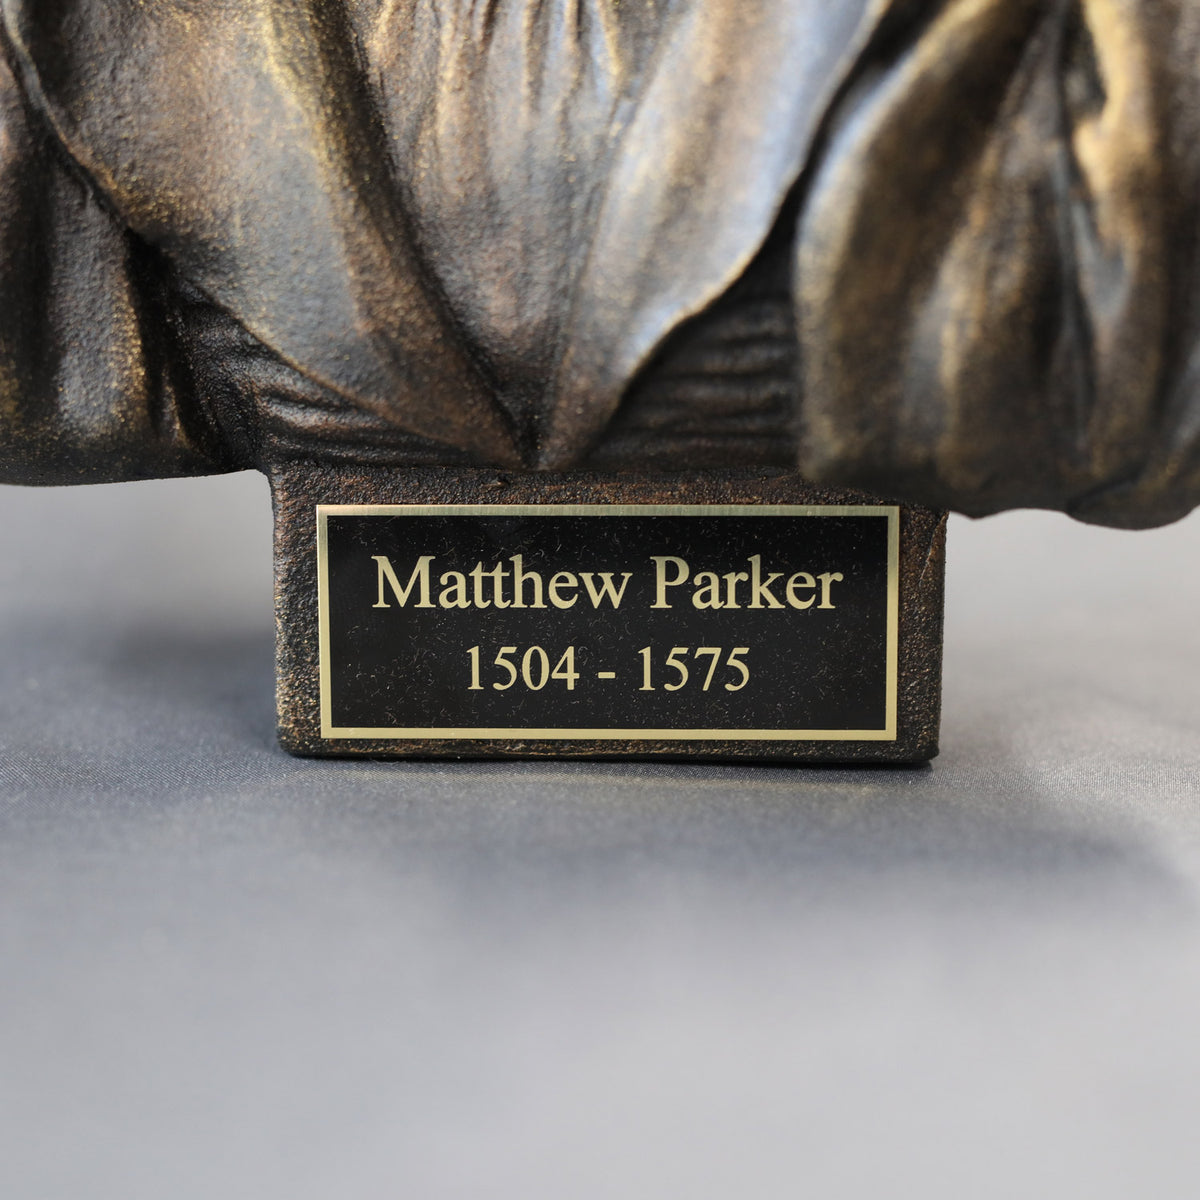 Matthew Parker - Sculpture